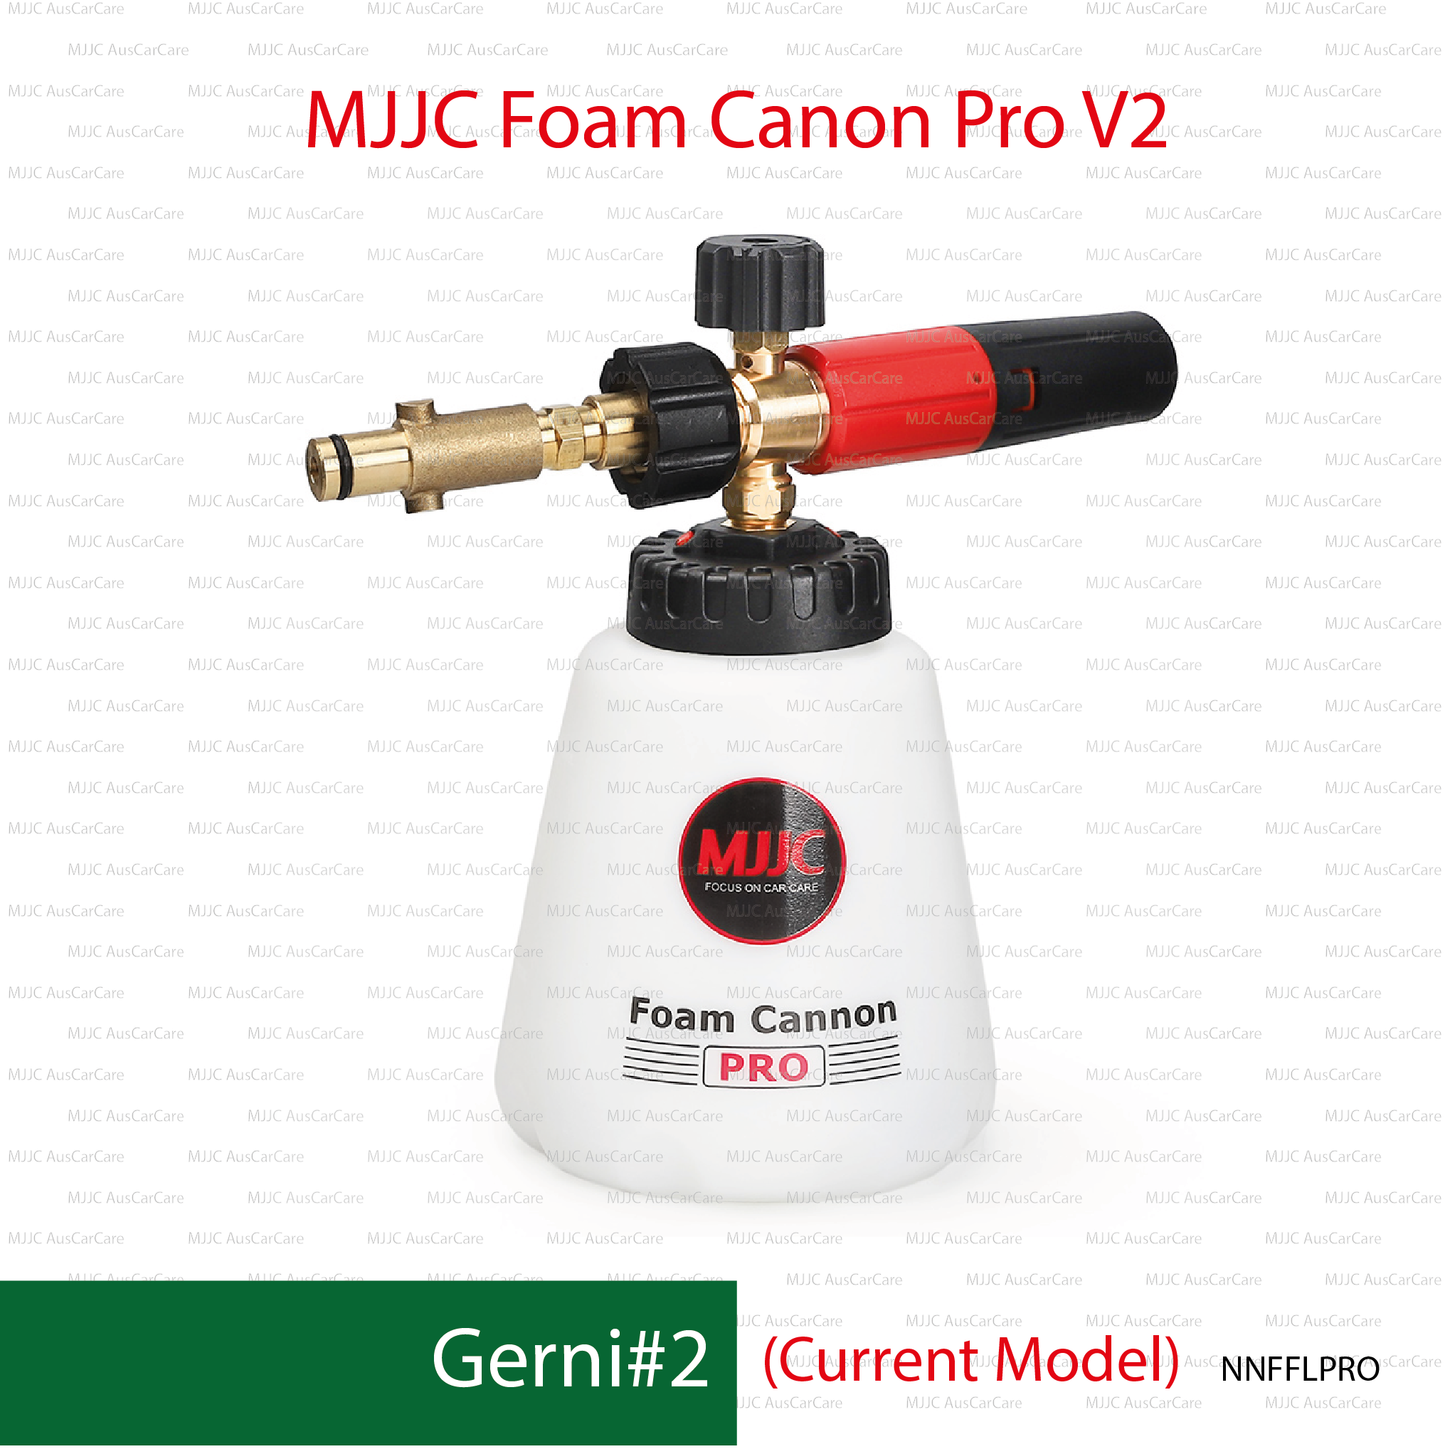 Gerni#2 (NNFPROCN) Adapter for MJJC Foam Cannon Pro V2 (NNFFLPRO)